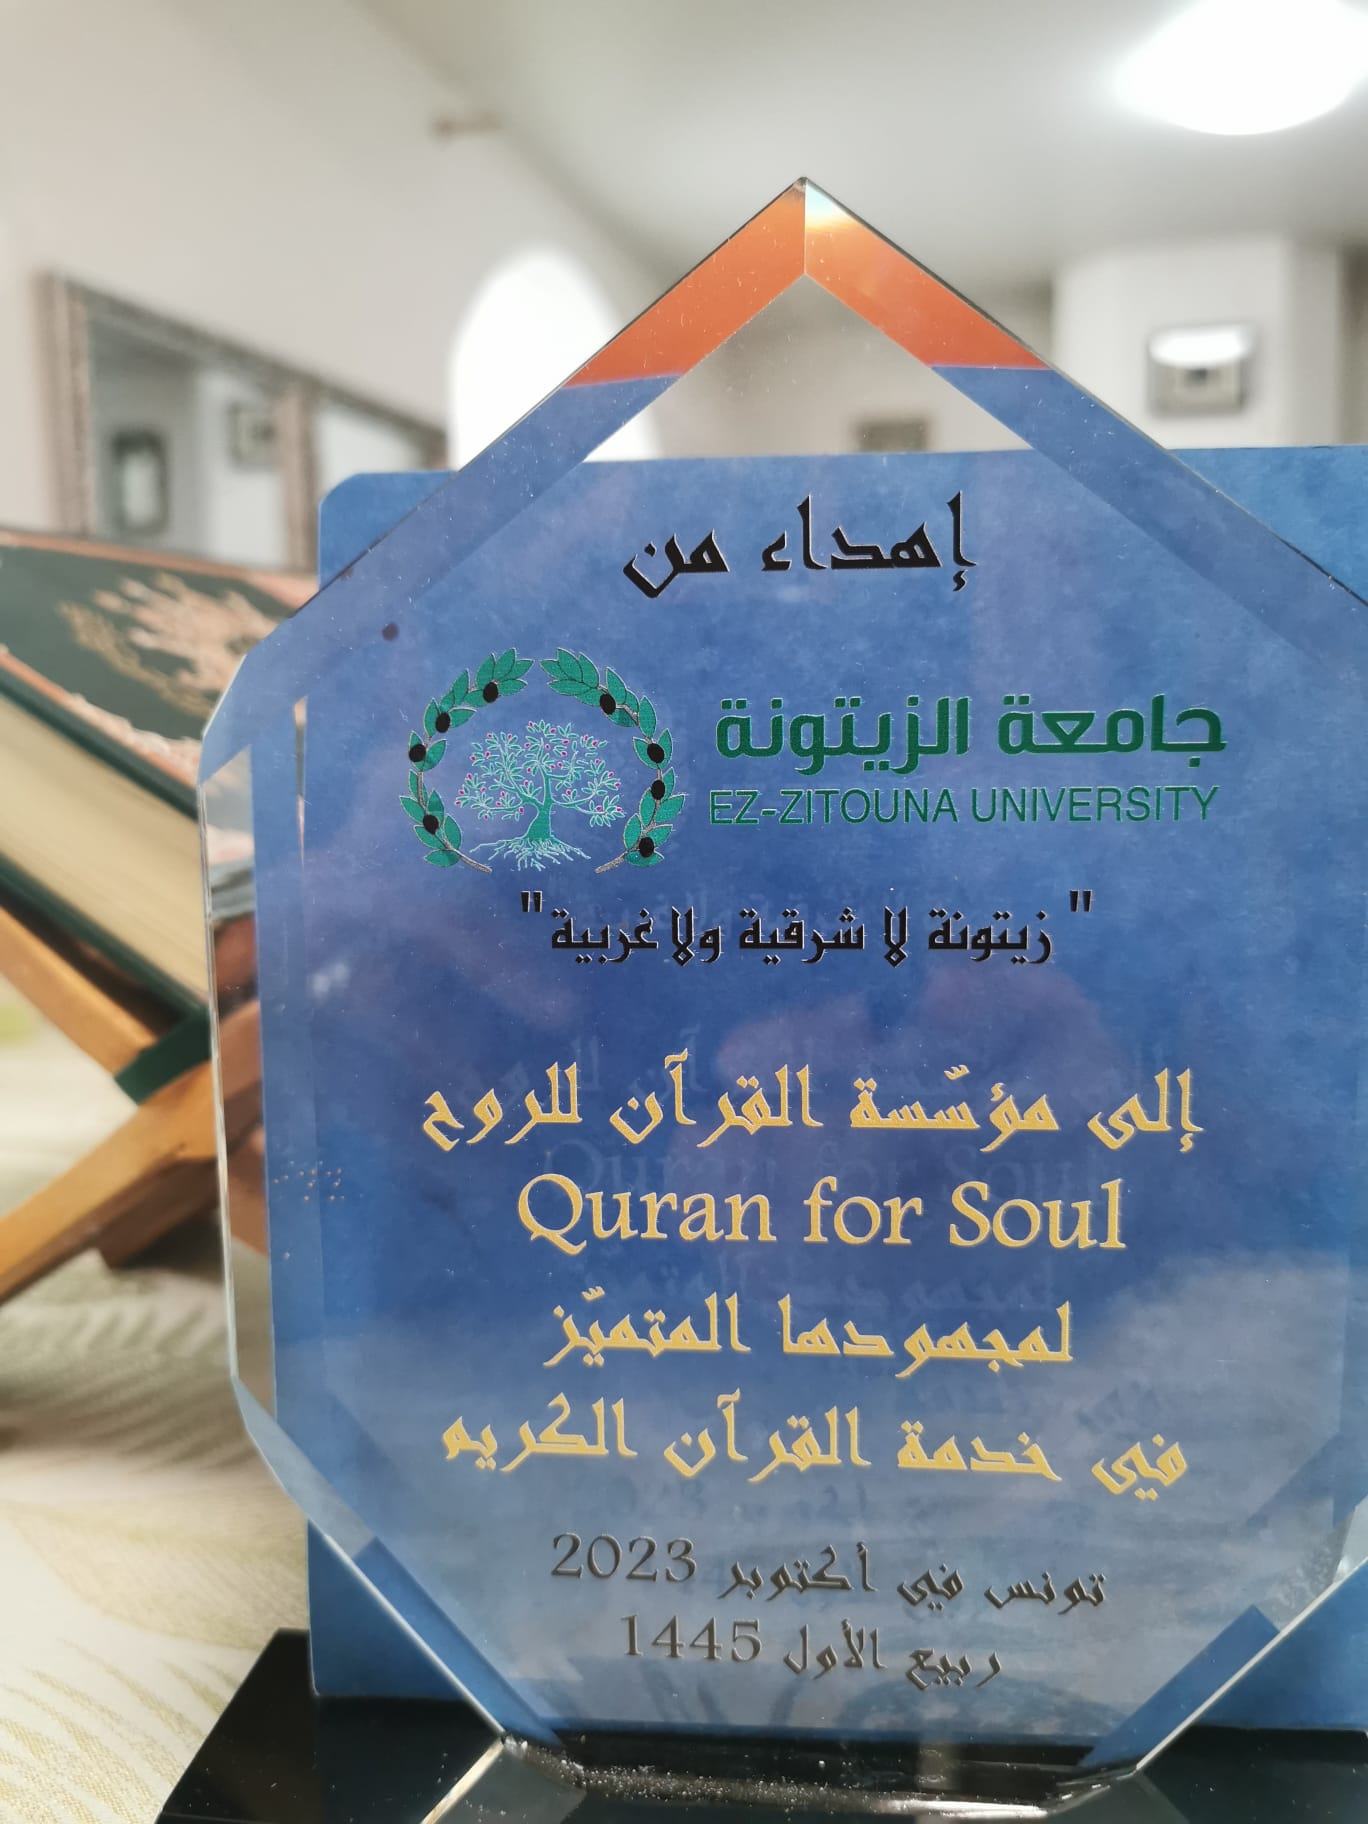 La Fondation QuranForSoul honorée par l'Université Ezzeitouna pour son engagement envers le Saint Coran, dans le sillage de la prestigieuse tradition de l'Université